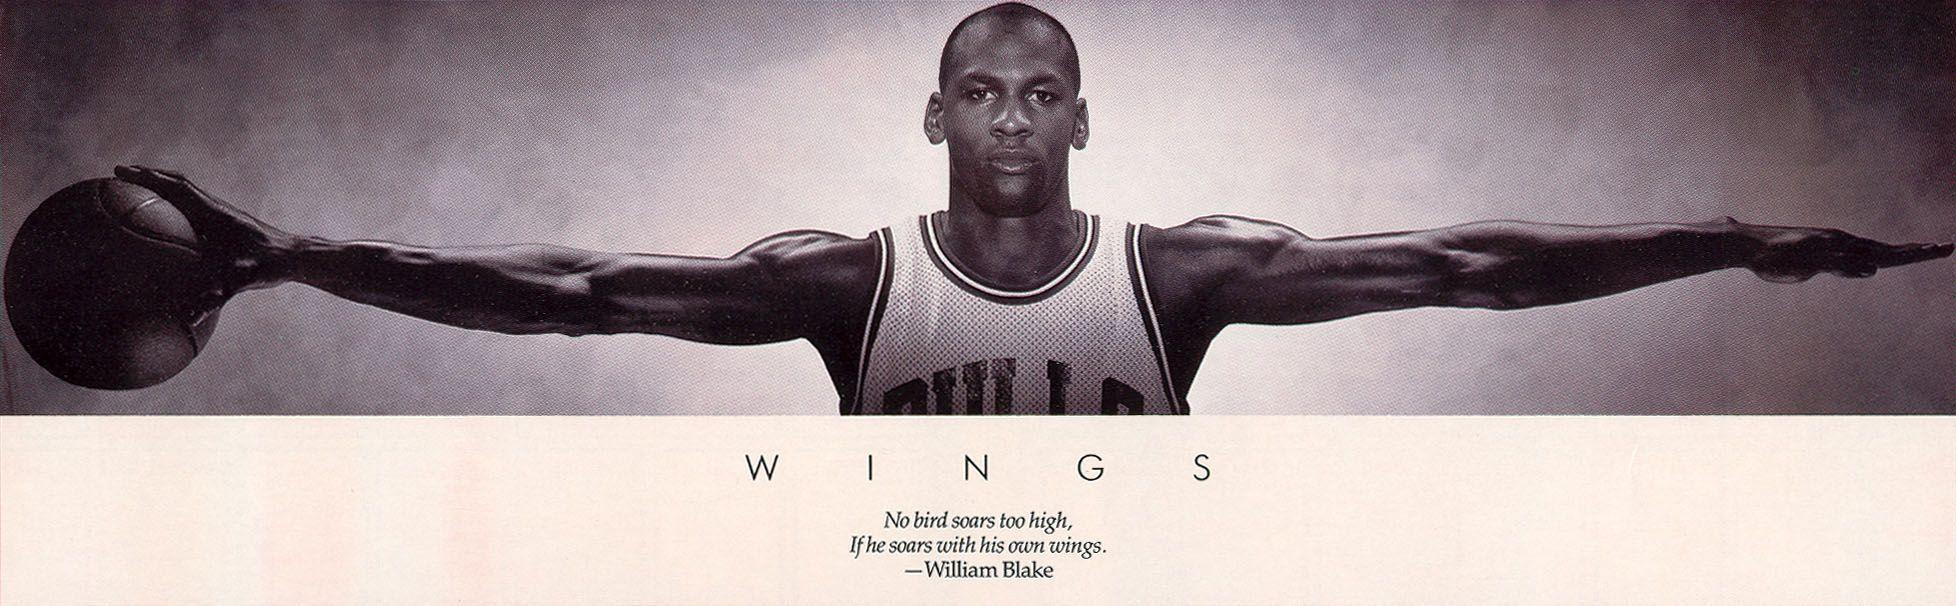 Daily Kick Pic: Air Jordan Wings Poster